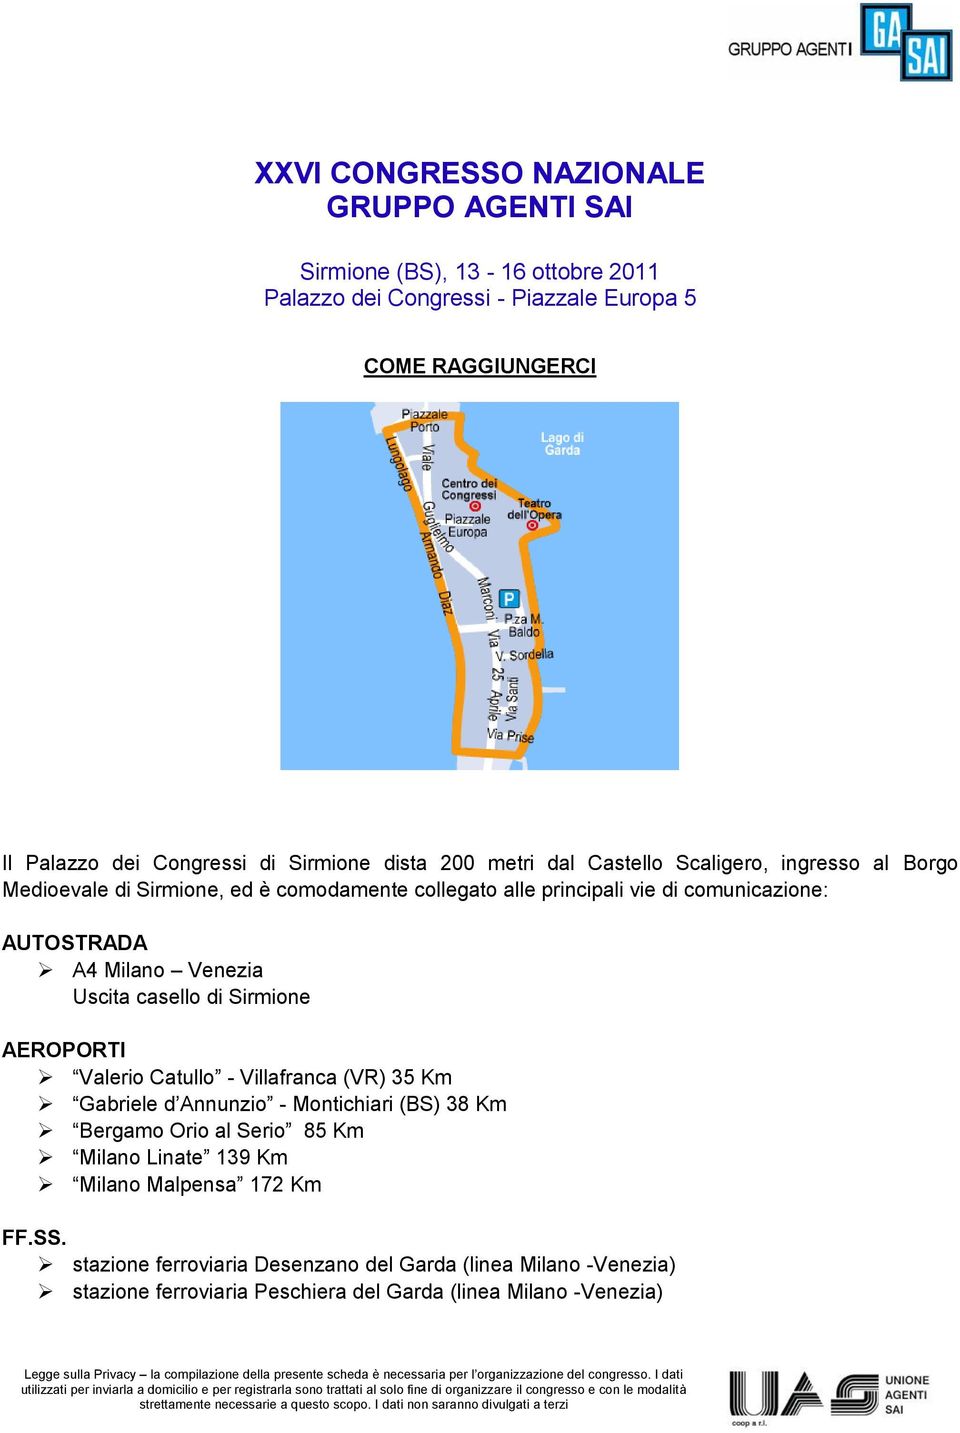 AEROPORTI Valerio Catullo - Villafranca (VR) 35 Km Gabriele d Annunzio - Montichiari (BS) 38 Km Bergamo Orio al Serio 85 Km Milano Linate 139 Km